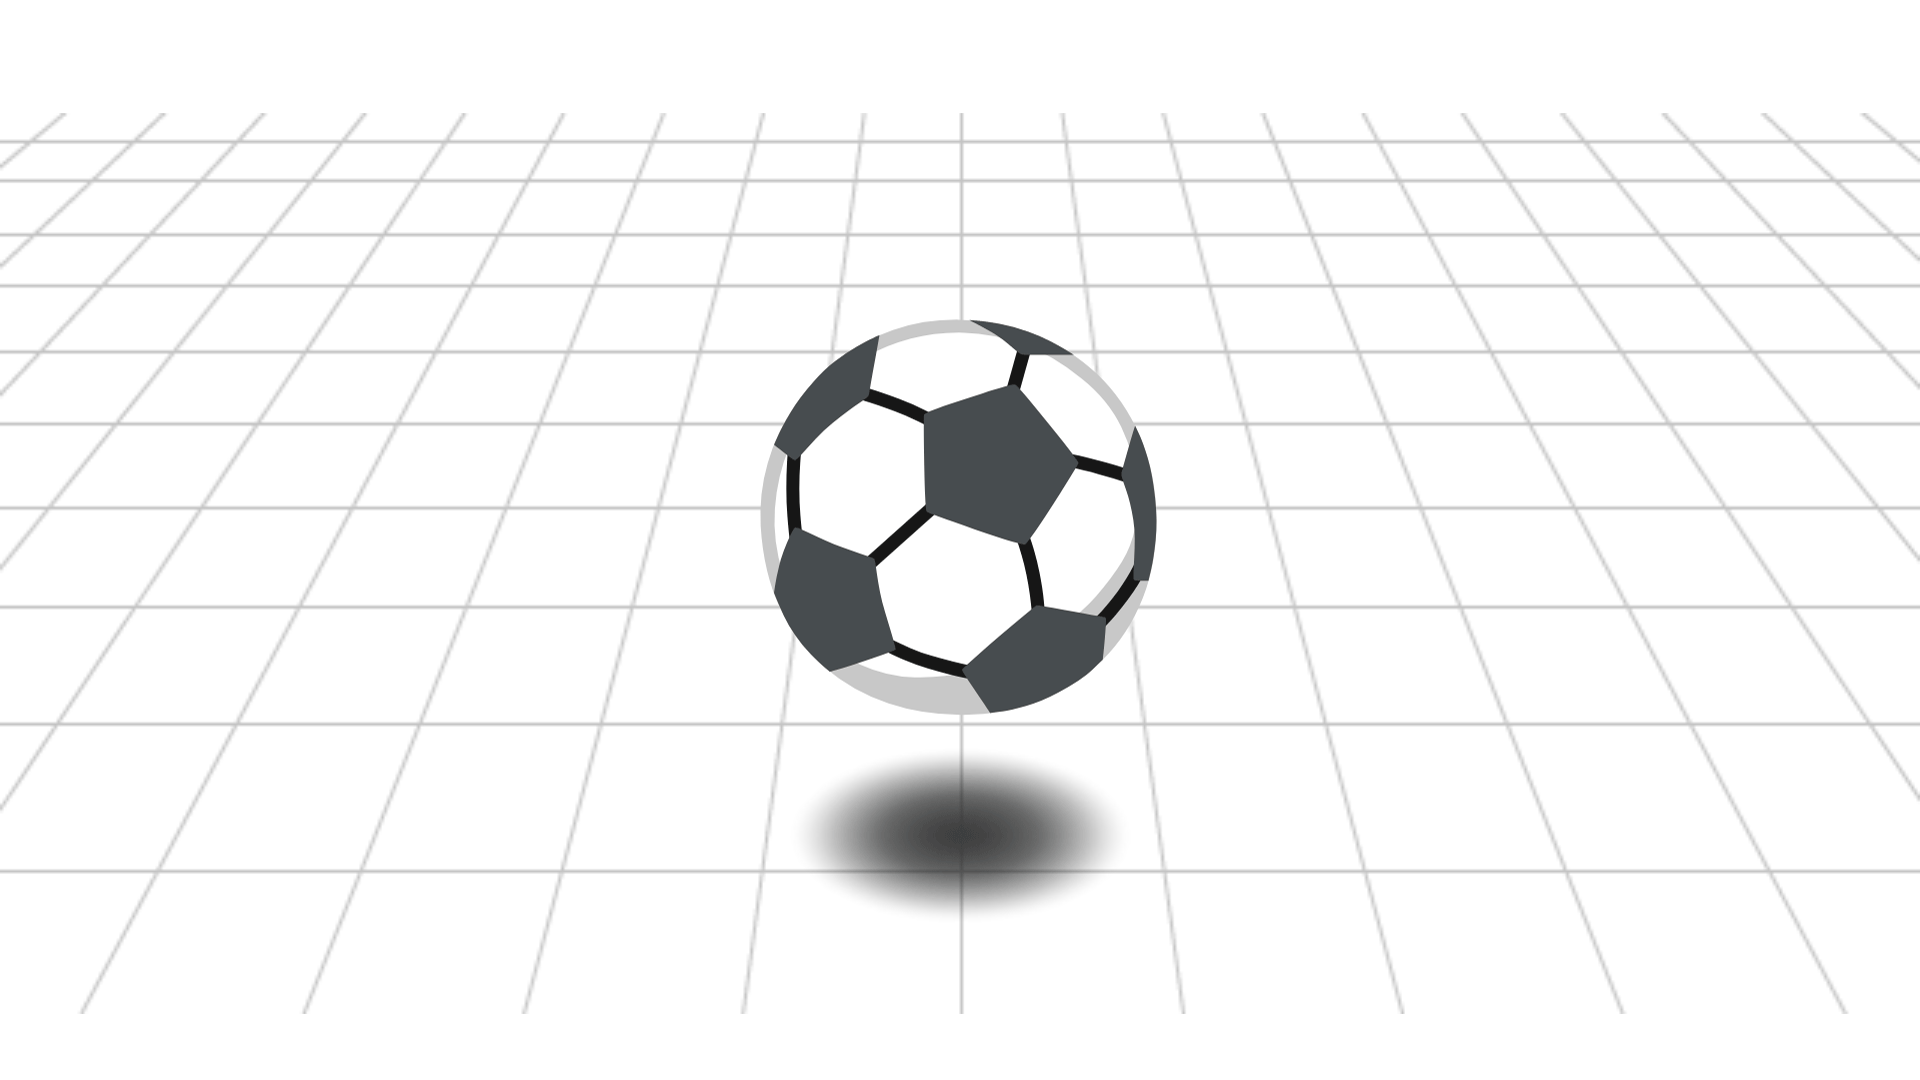 サッカーボールの下に影があり、浮いているように見える